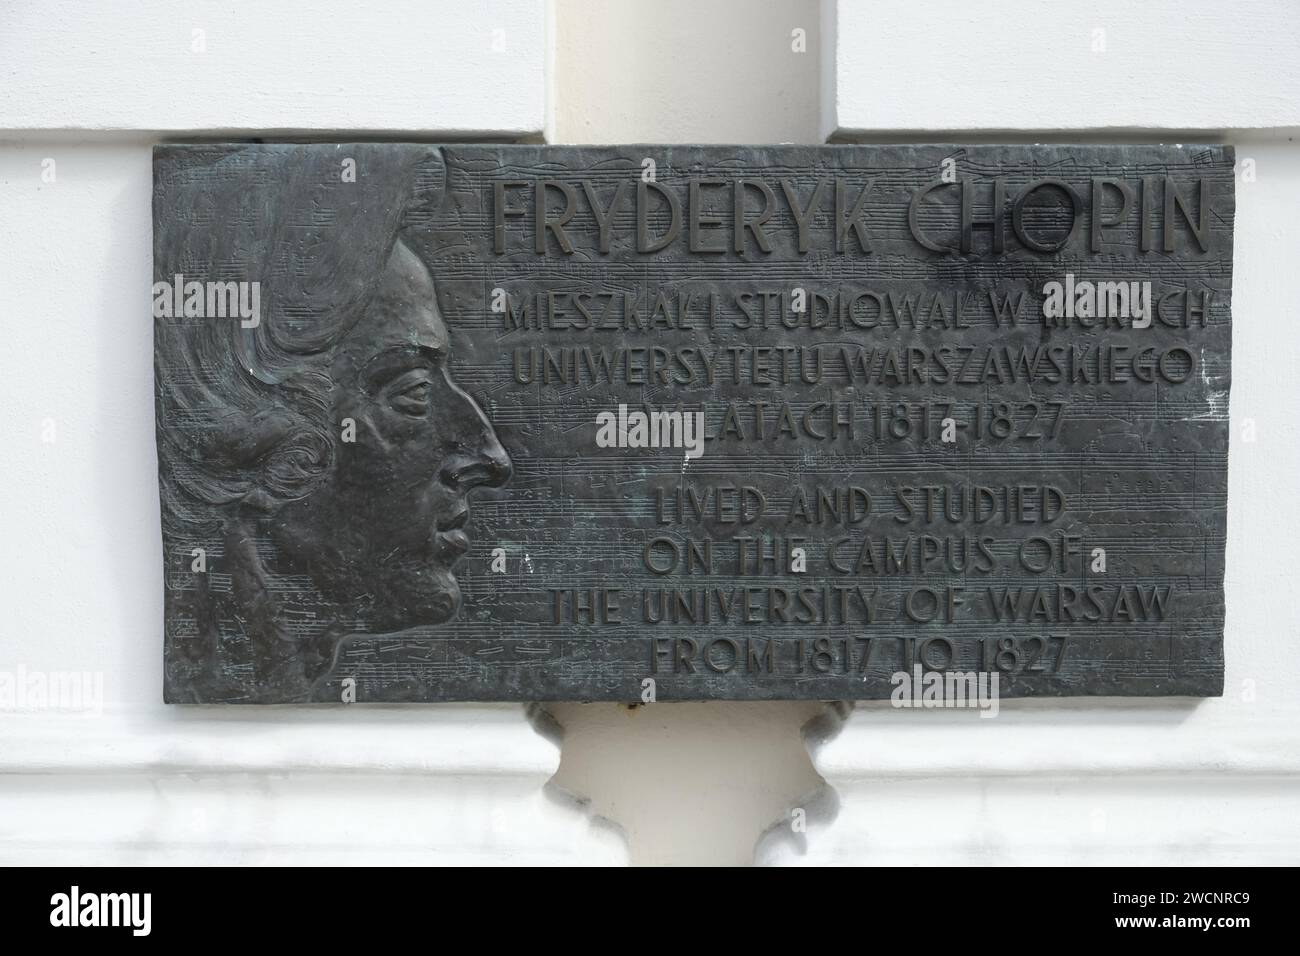 Rederic Chopin memorial plaque, Uniwersytet Warszawski, Krakowskie Przedmiescie, Old Town, Warsaw, Poland Stock Photo